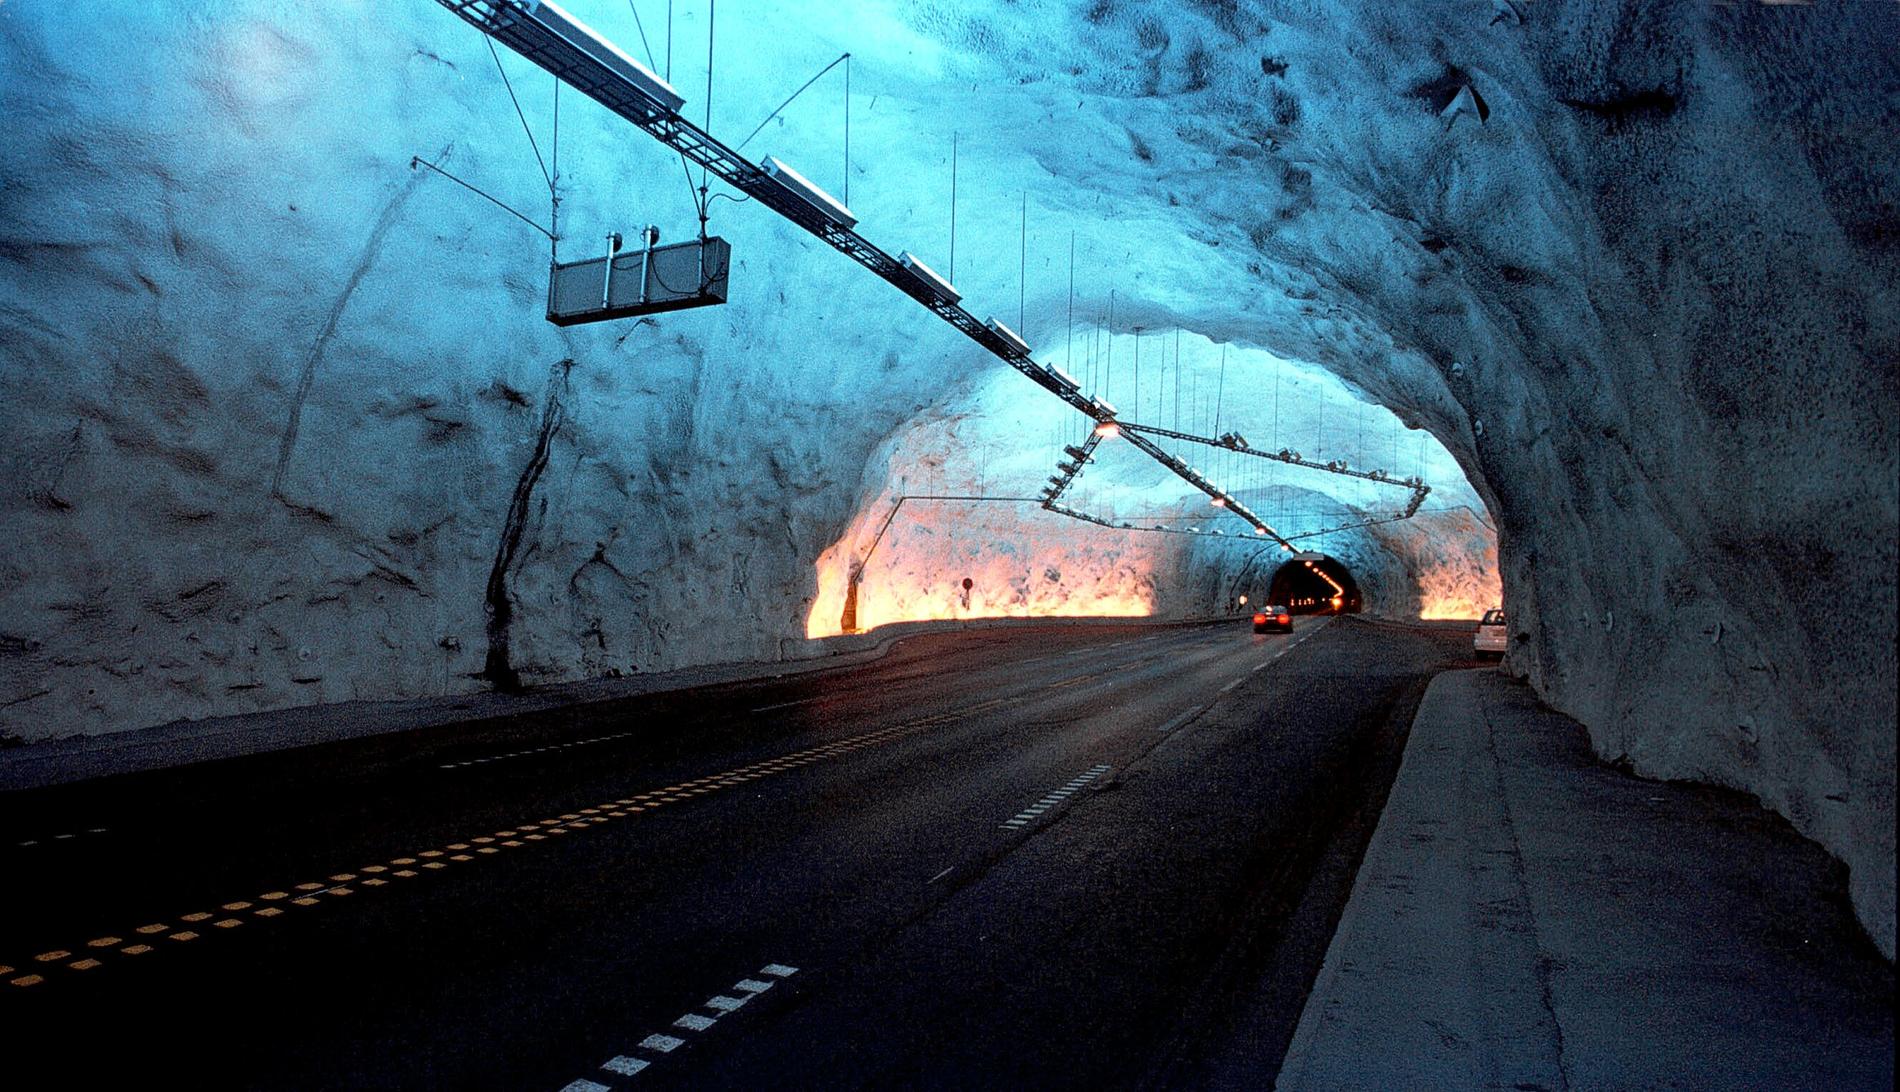 PASS FARTEN: Her i Lærdalstunnelen, verdens lengste tunnel, skal gjennomsnittsfarten din måles. Strekningen du blir målt er hele 19,5 kilometer lang.